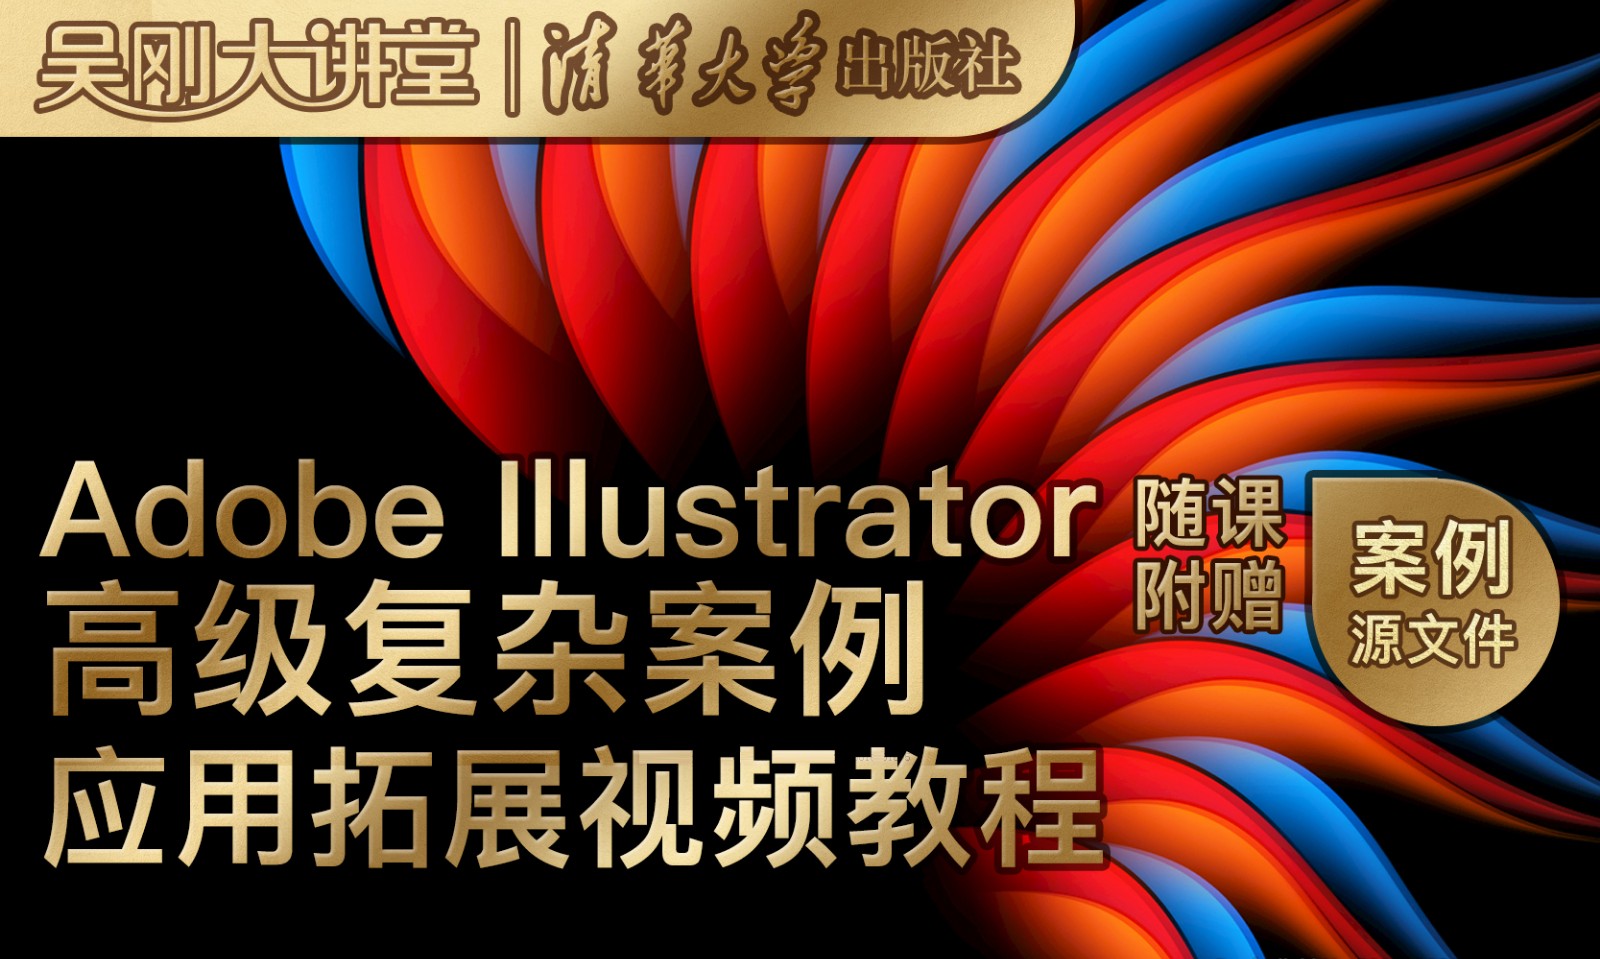 【吴刚大讲堂】Adobe Illustrator(AI)高级复杂案例应用拓展教程